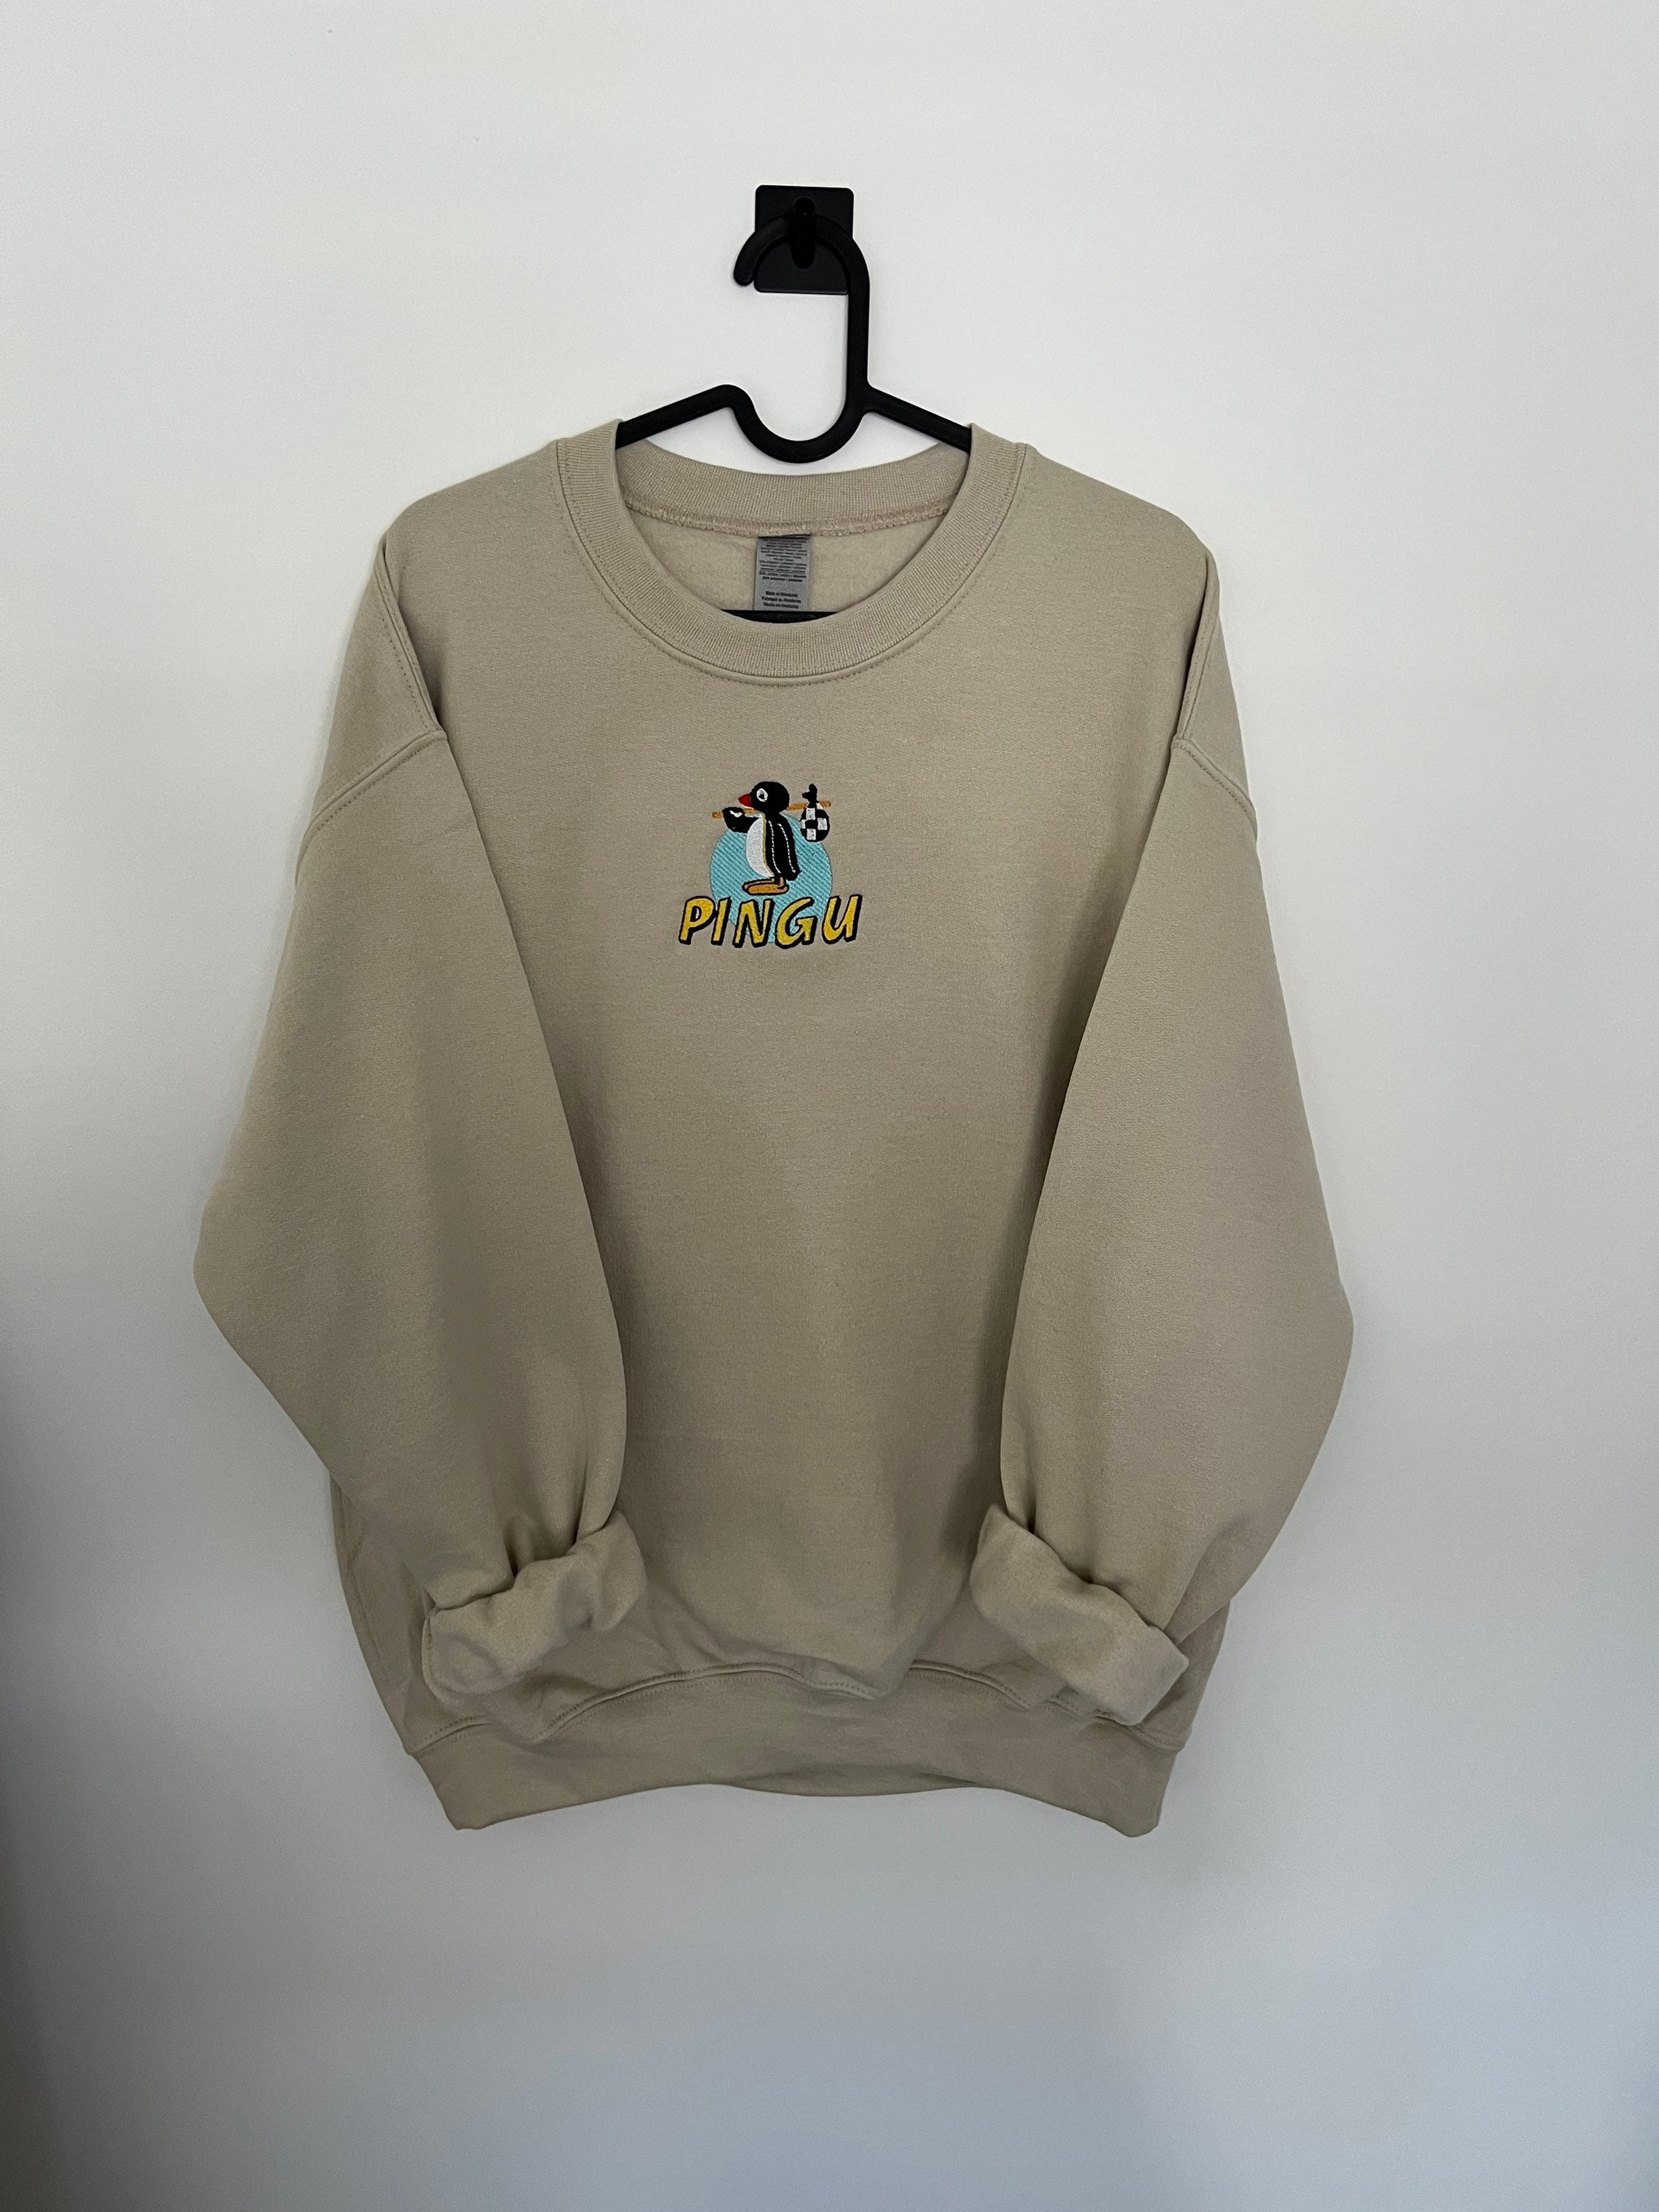 Pingu Sweatshirt 90s Kids 90s Inspired Sweatshirt | Etsy